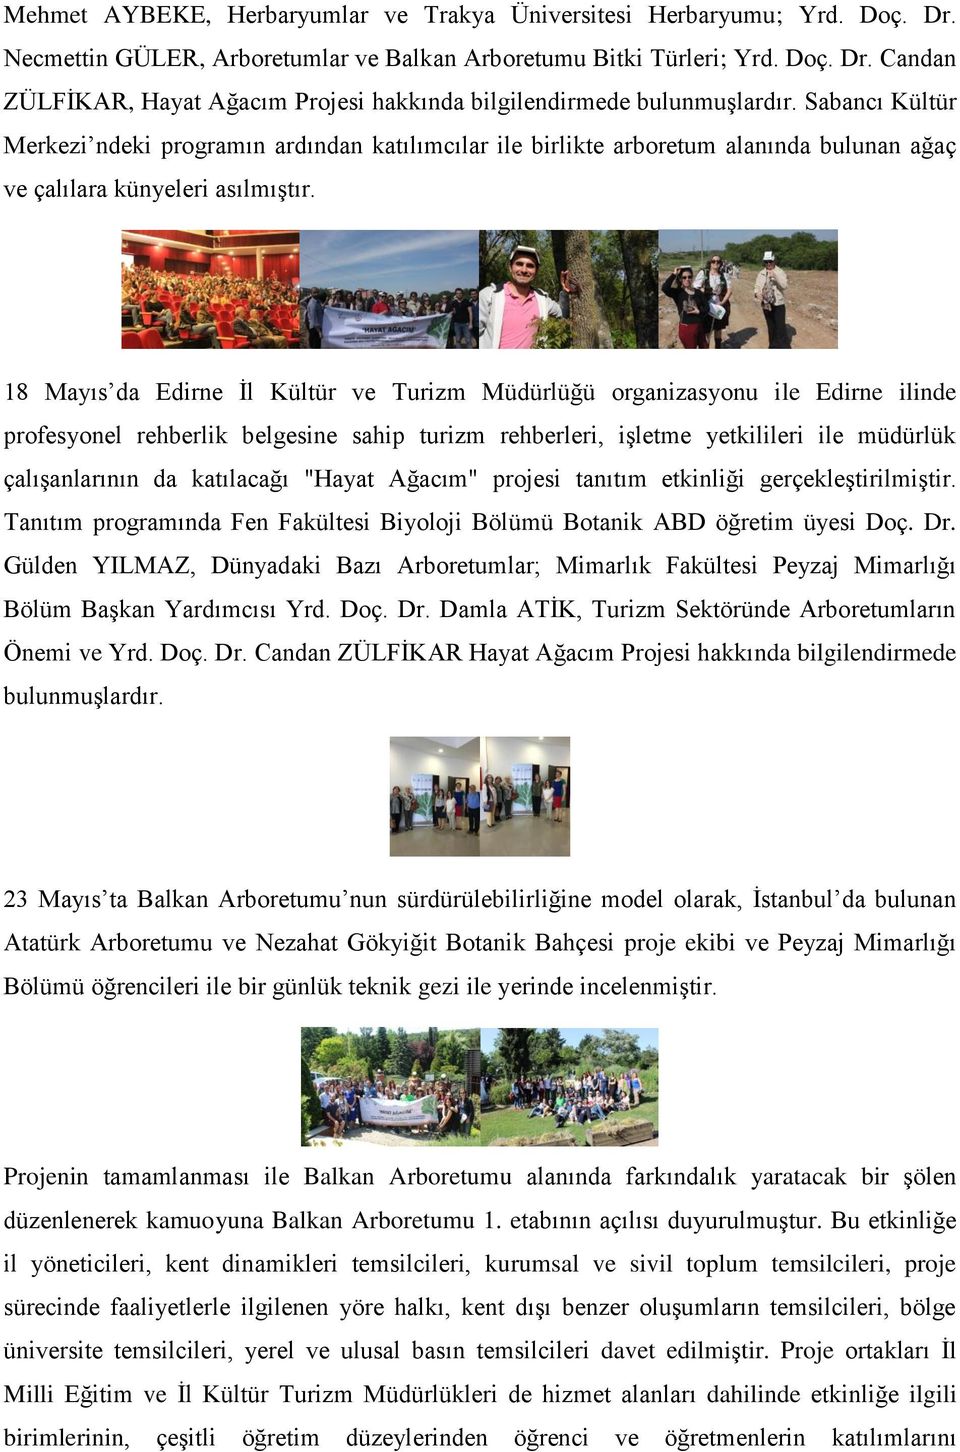 18 Mayıs da Edirne İl Kültür ve Turizm Müdürlüğü organizasyonu ile Edirne ilinde profesyonel rehberlik belgesine sahip turizm rehberleri, işletme yetkilileri ile müdürlük çalışanlarının da katılacağı